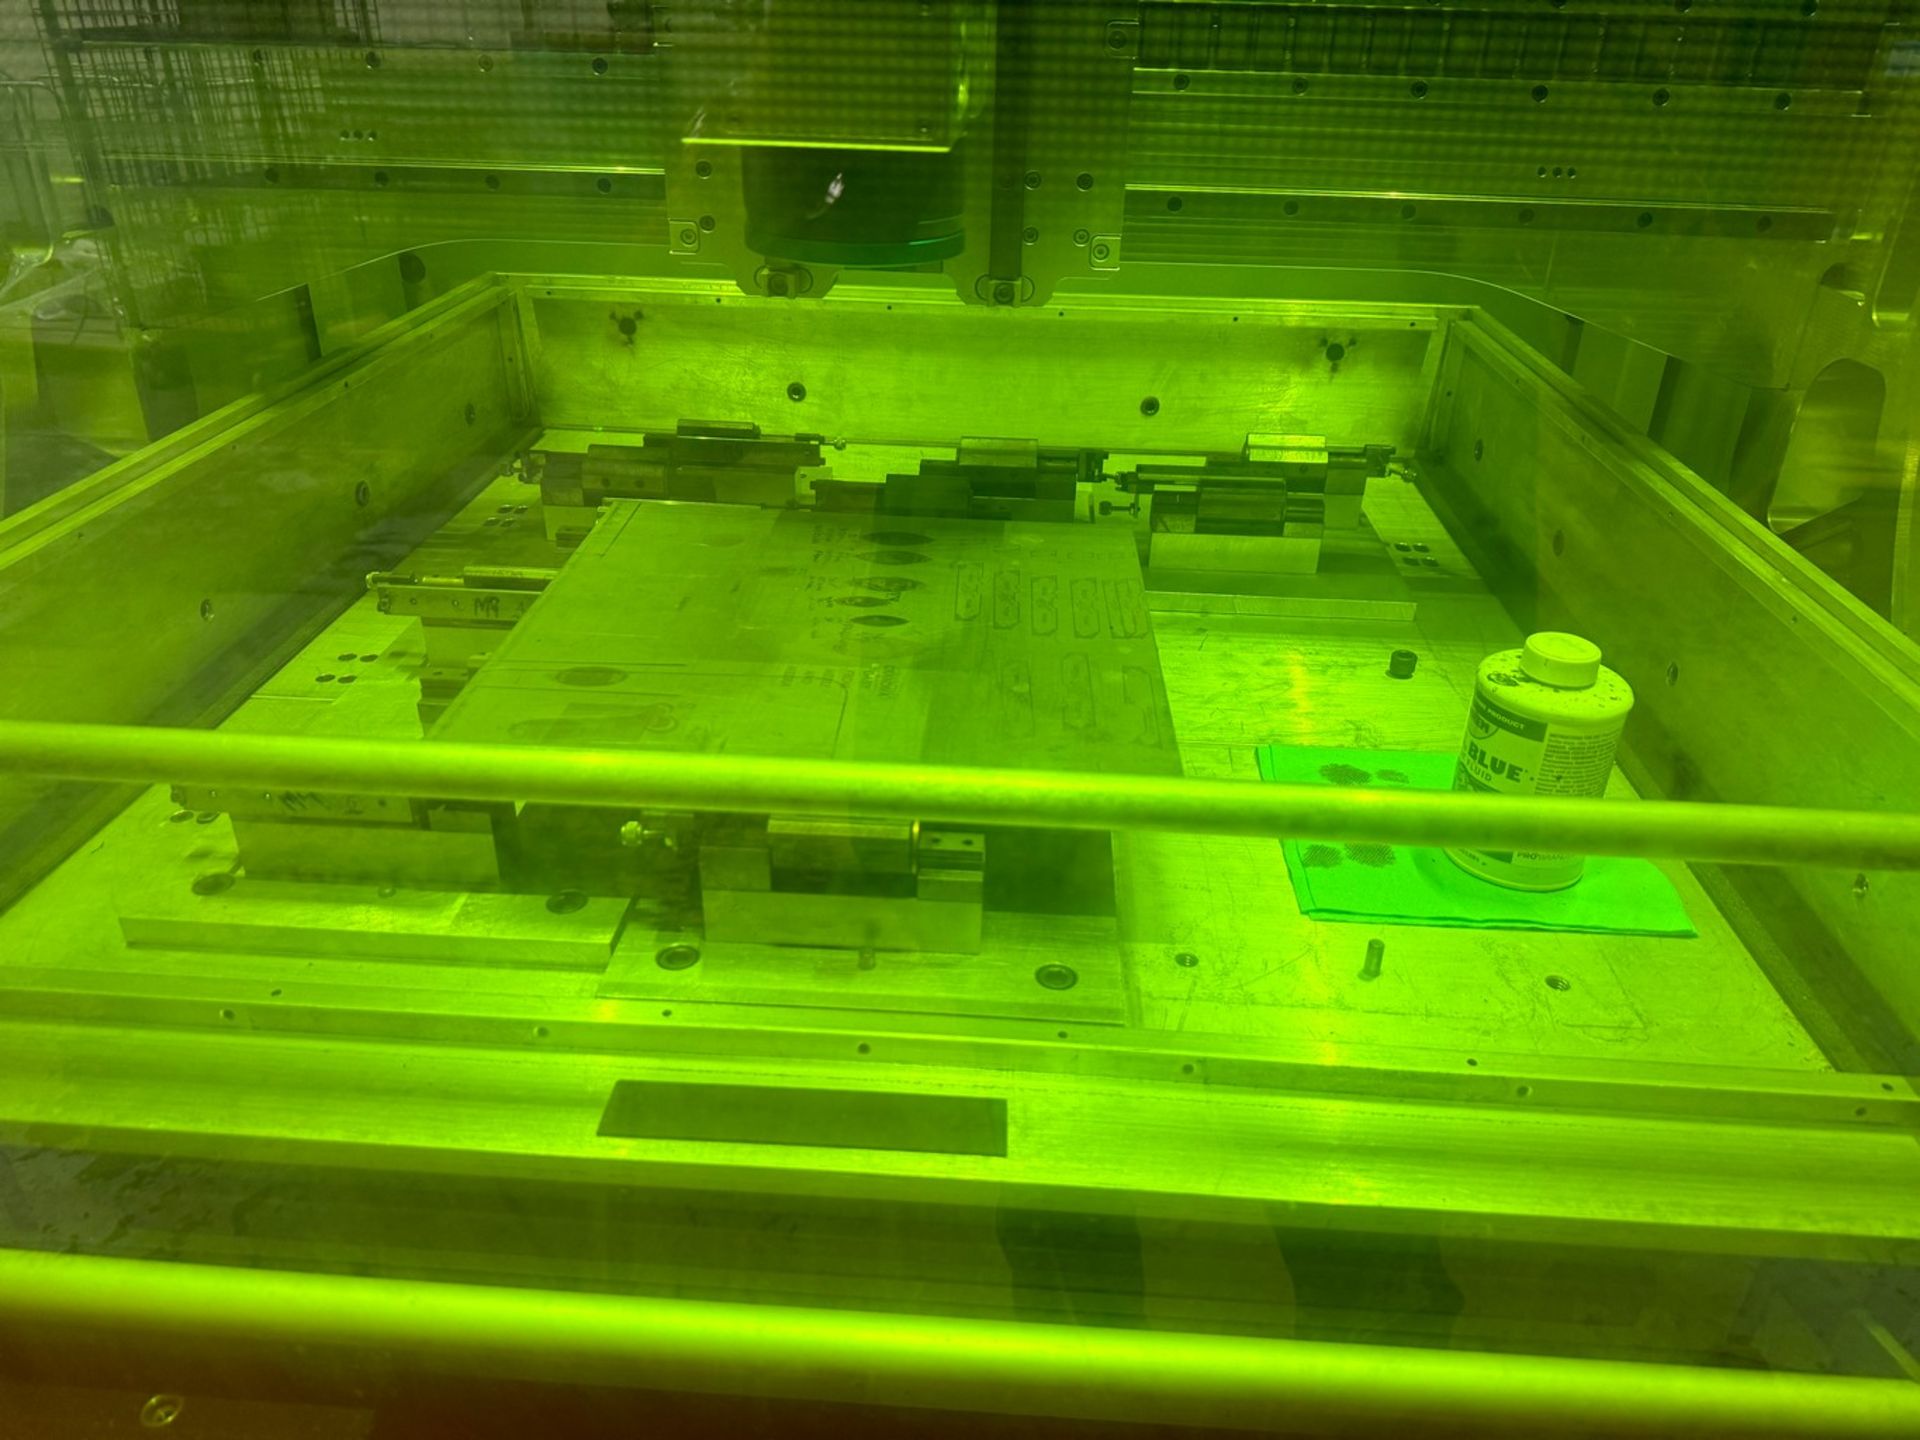 OR-Laser Orlas Portal 1000 CNC Laser Engraving Machine - Image 4 of 9